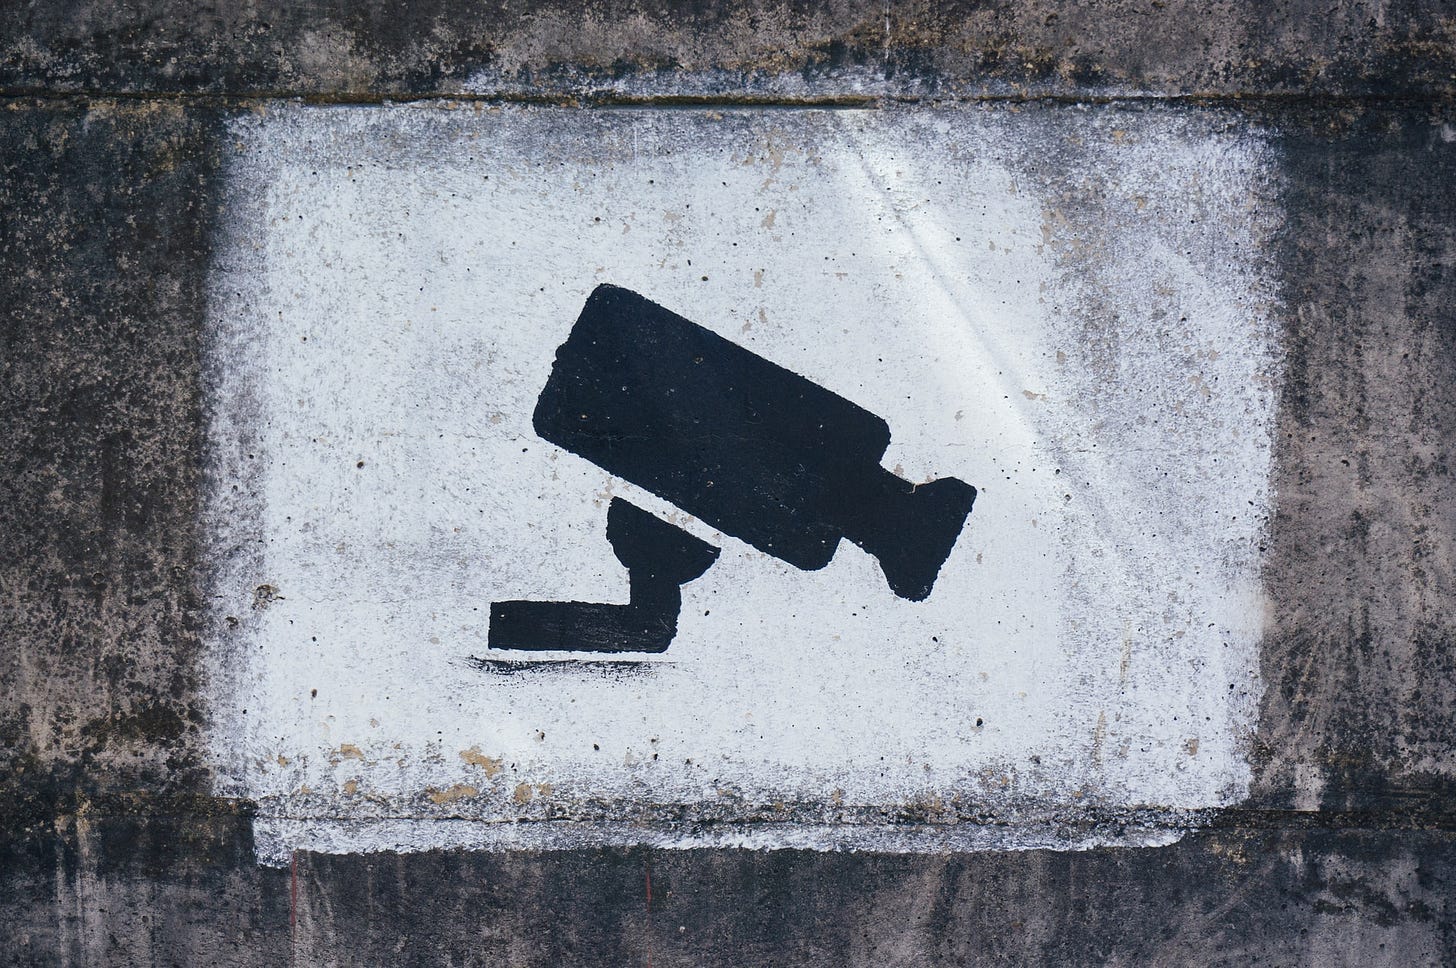 Imagem de uma câmera desenhada em um muro